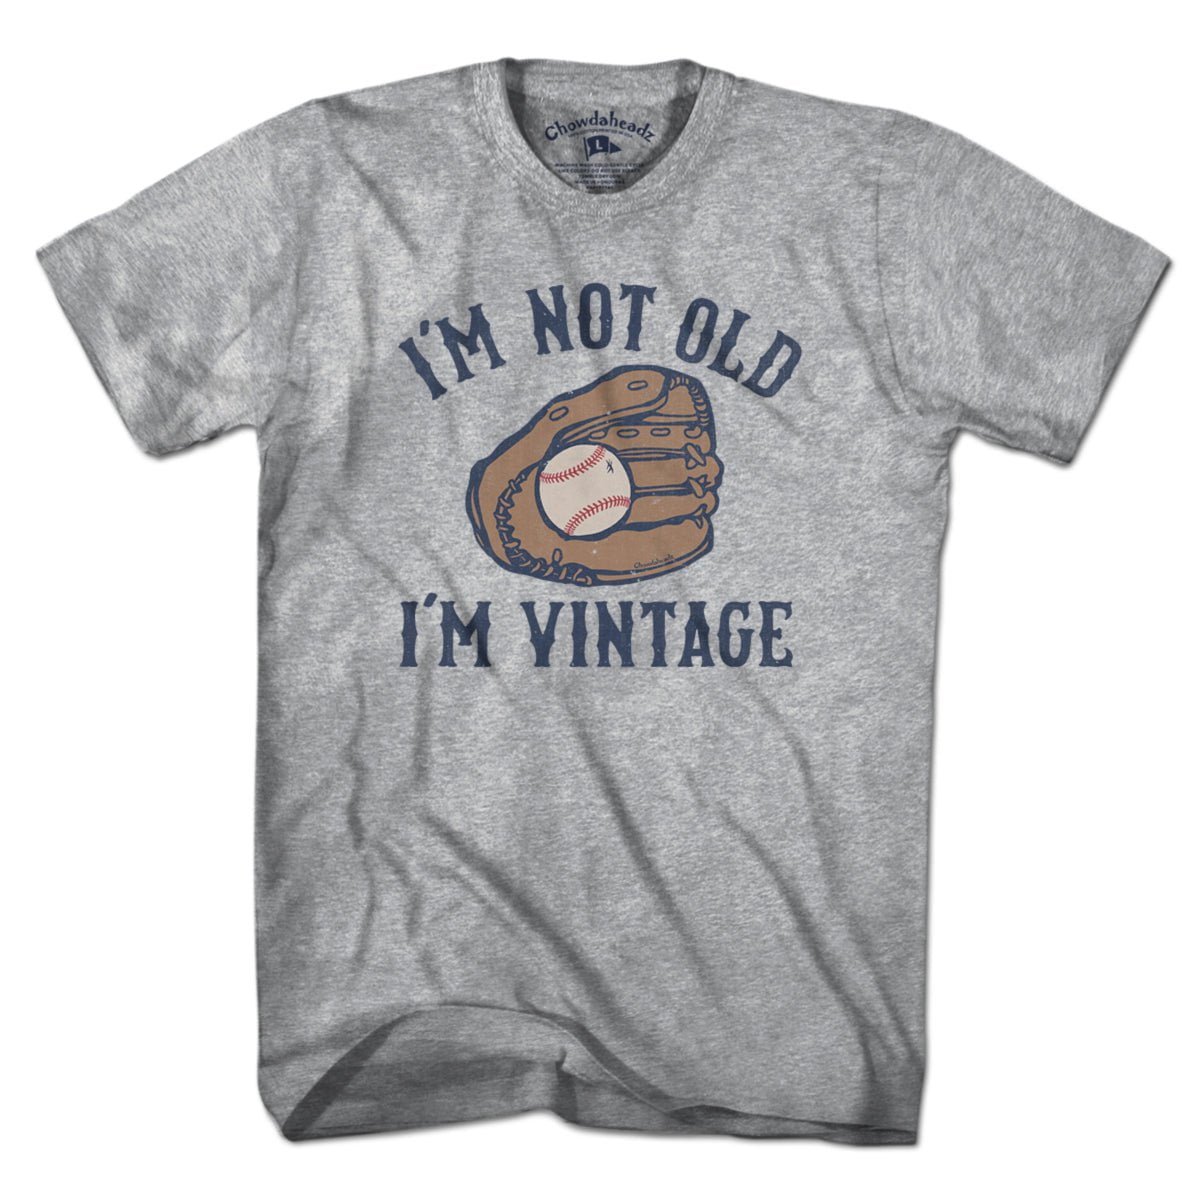 I'm Not Old I'm Vintage Baseball T-Shirt - Chowdaheadz